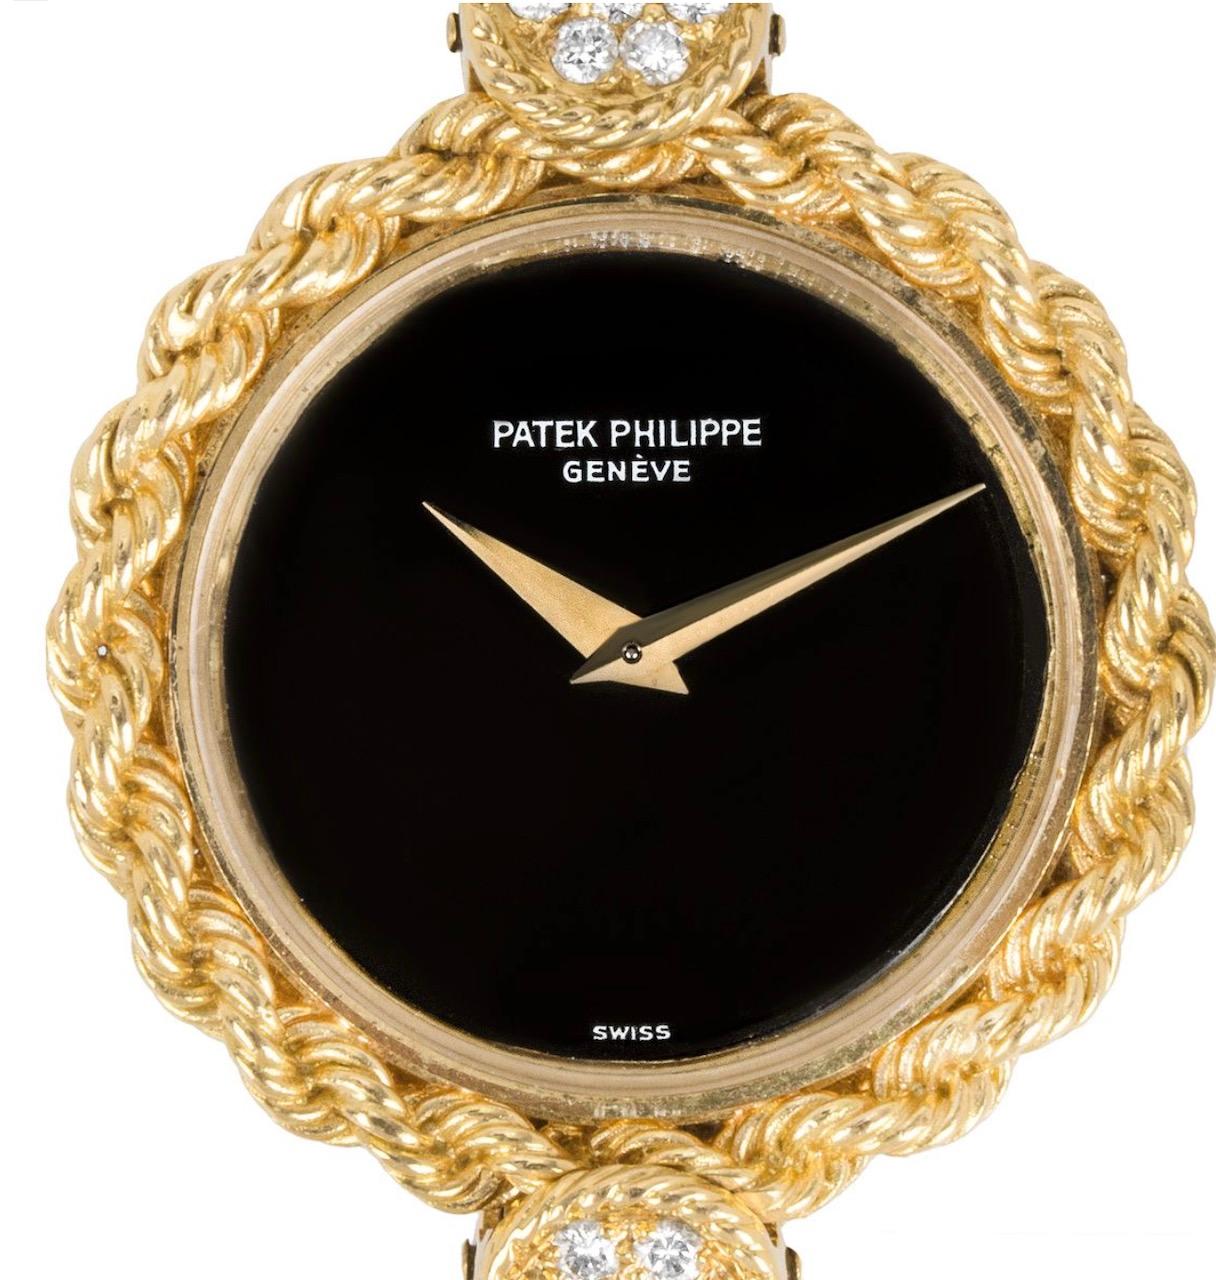 Une superbe montre habillée vintage pour femme, en or jaune, de Patek Philippe. Le cadran est en onyx noir et la lunette en corde d'or torsadée.

Le bracelet est doté d'un maillon en forme de disque serti d'un motif en onyx et en malachite, séparé